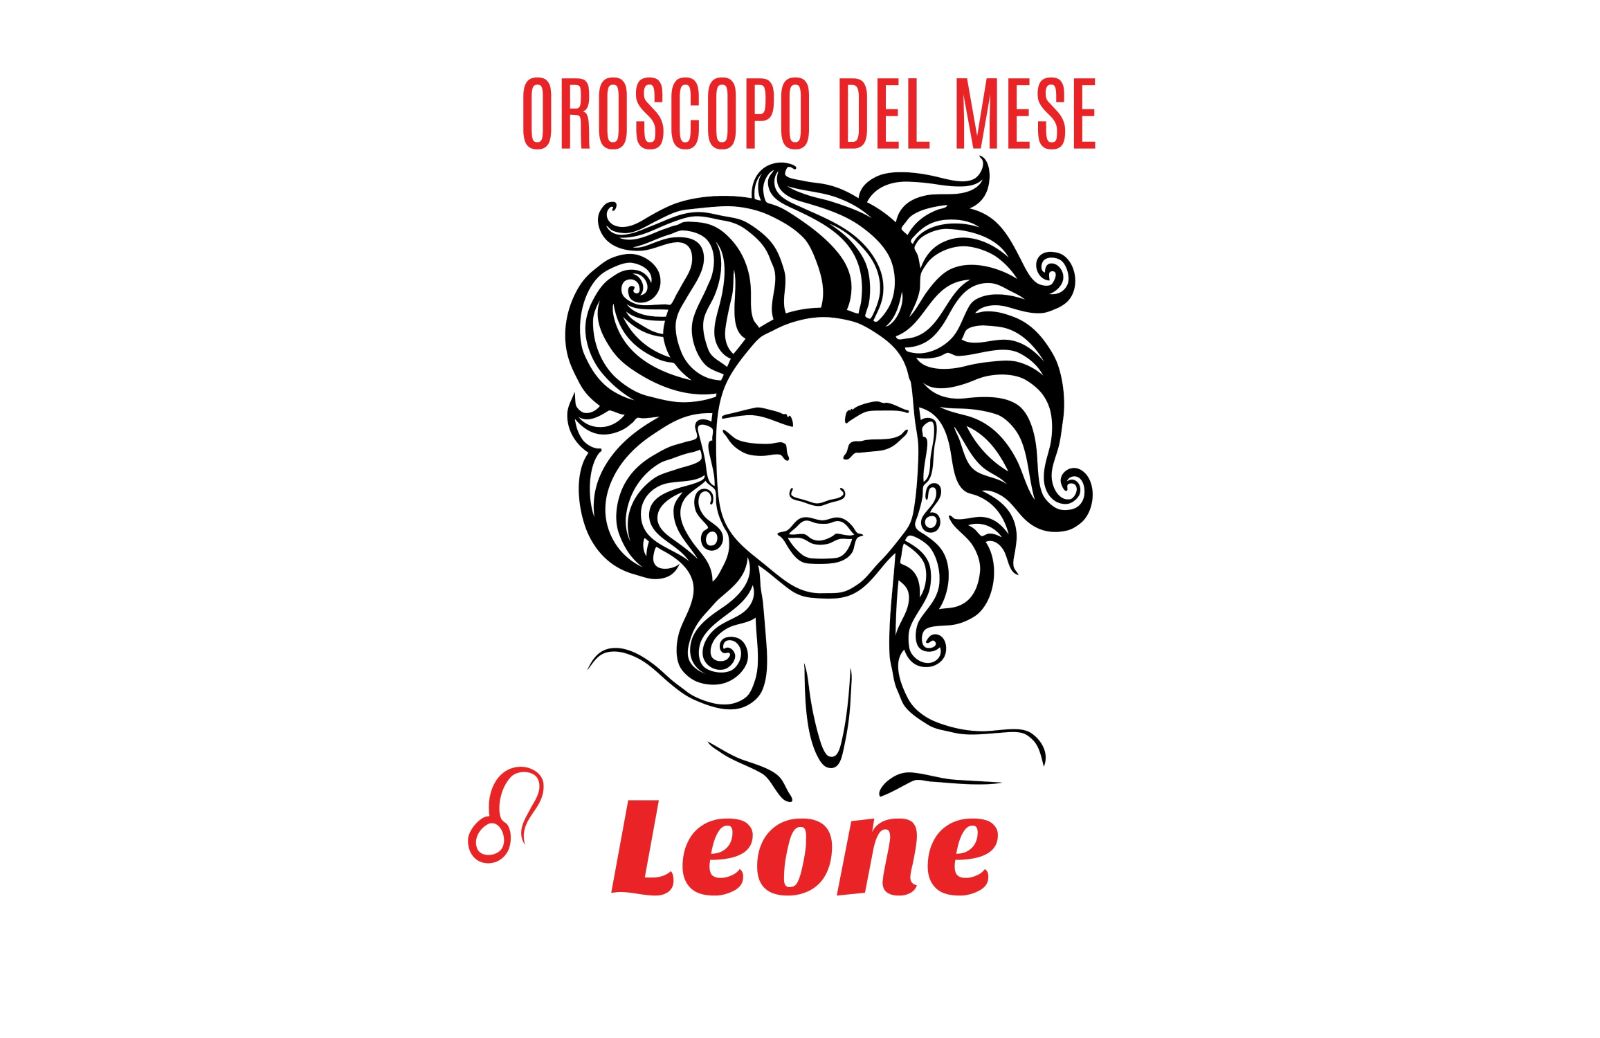 Oroscopo del mese: Leone - dicembre 2019